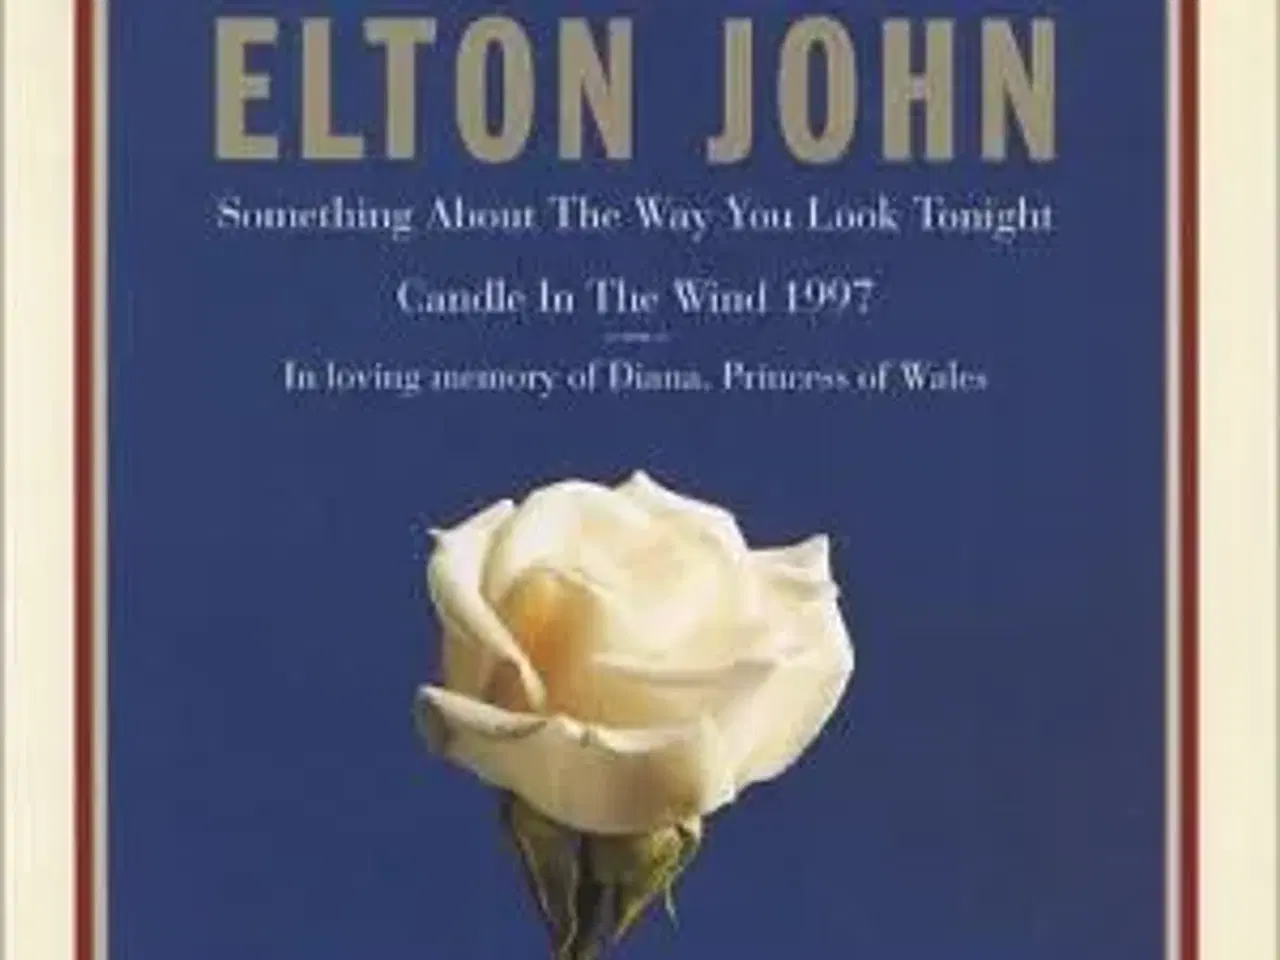 Billede 1 - Elton John ; Candle in the wind 1997 